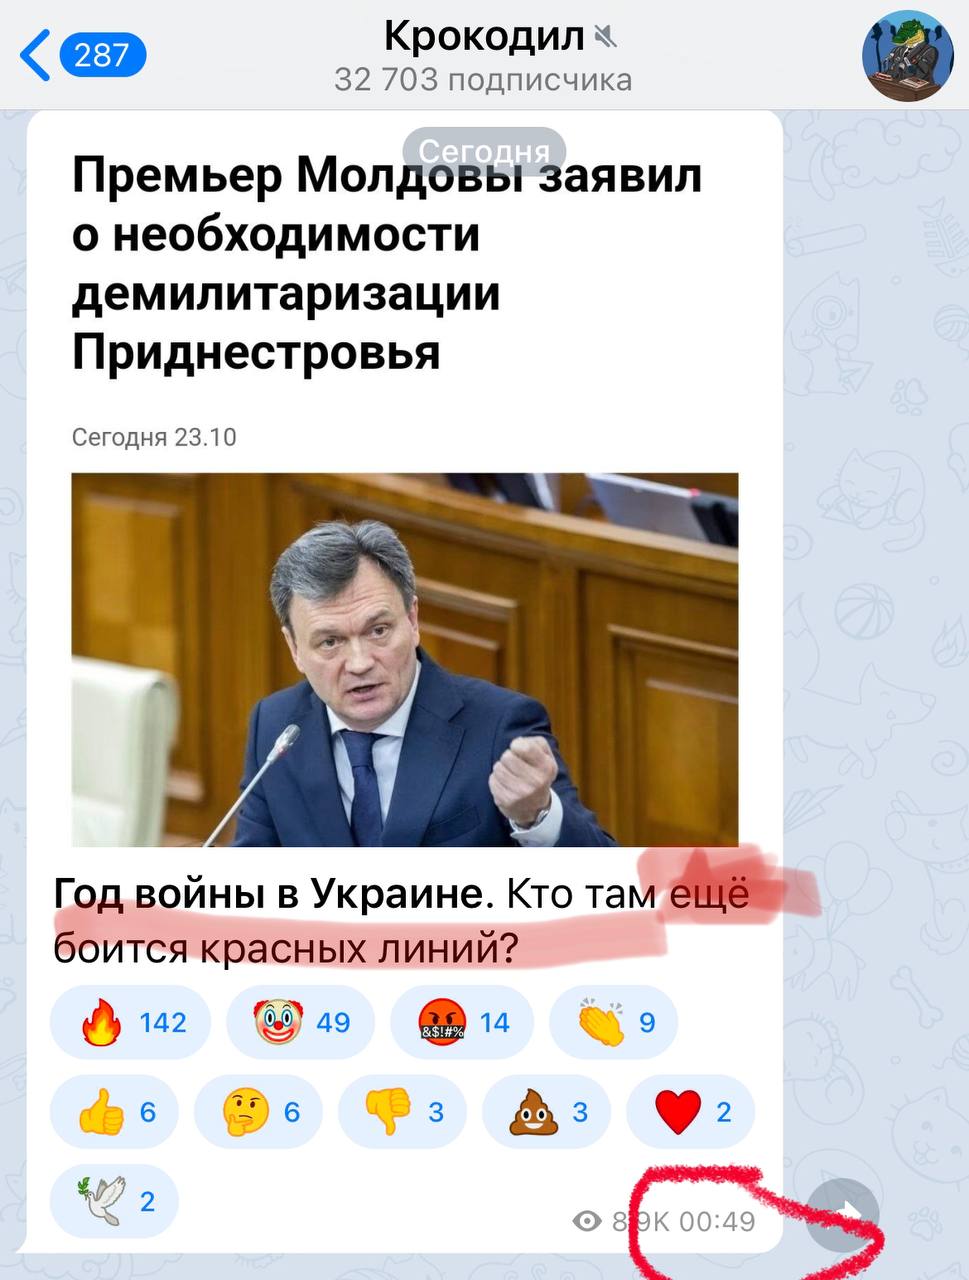 Труха телеграмм украина на русском языке смотреть онлайн бесплатно фото 36